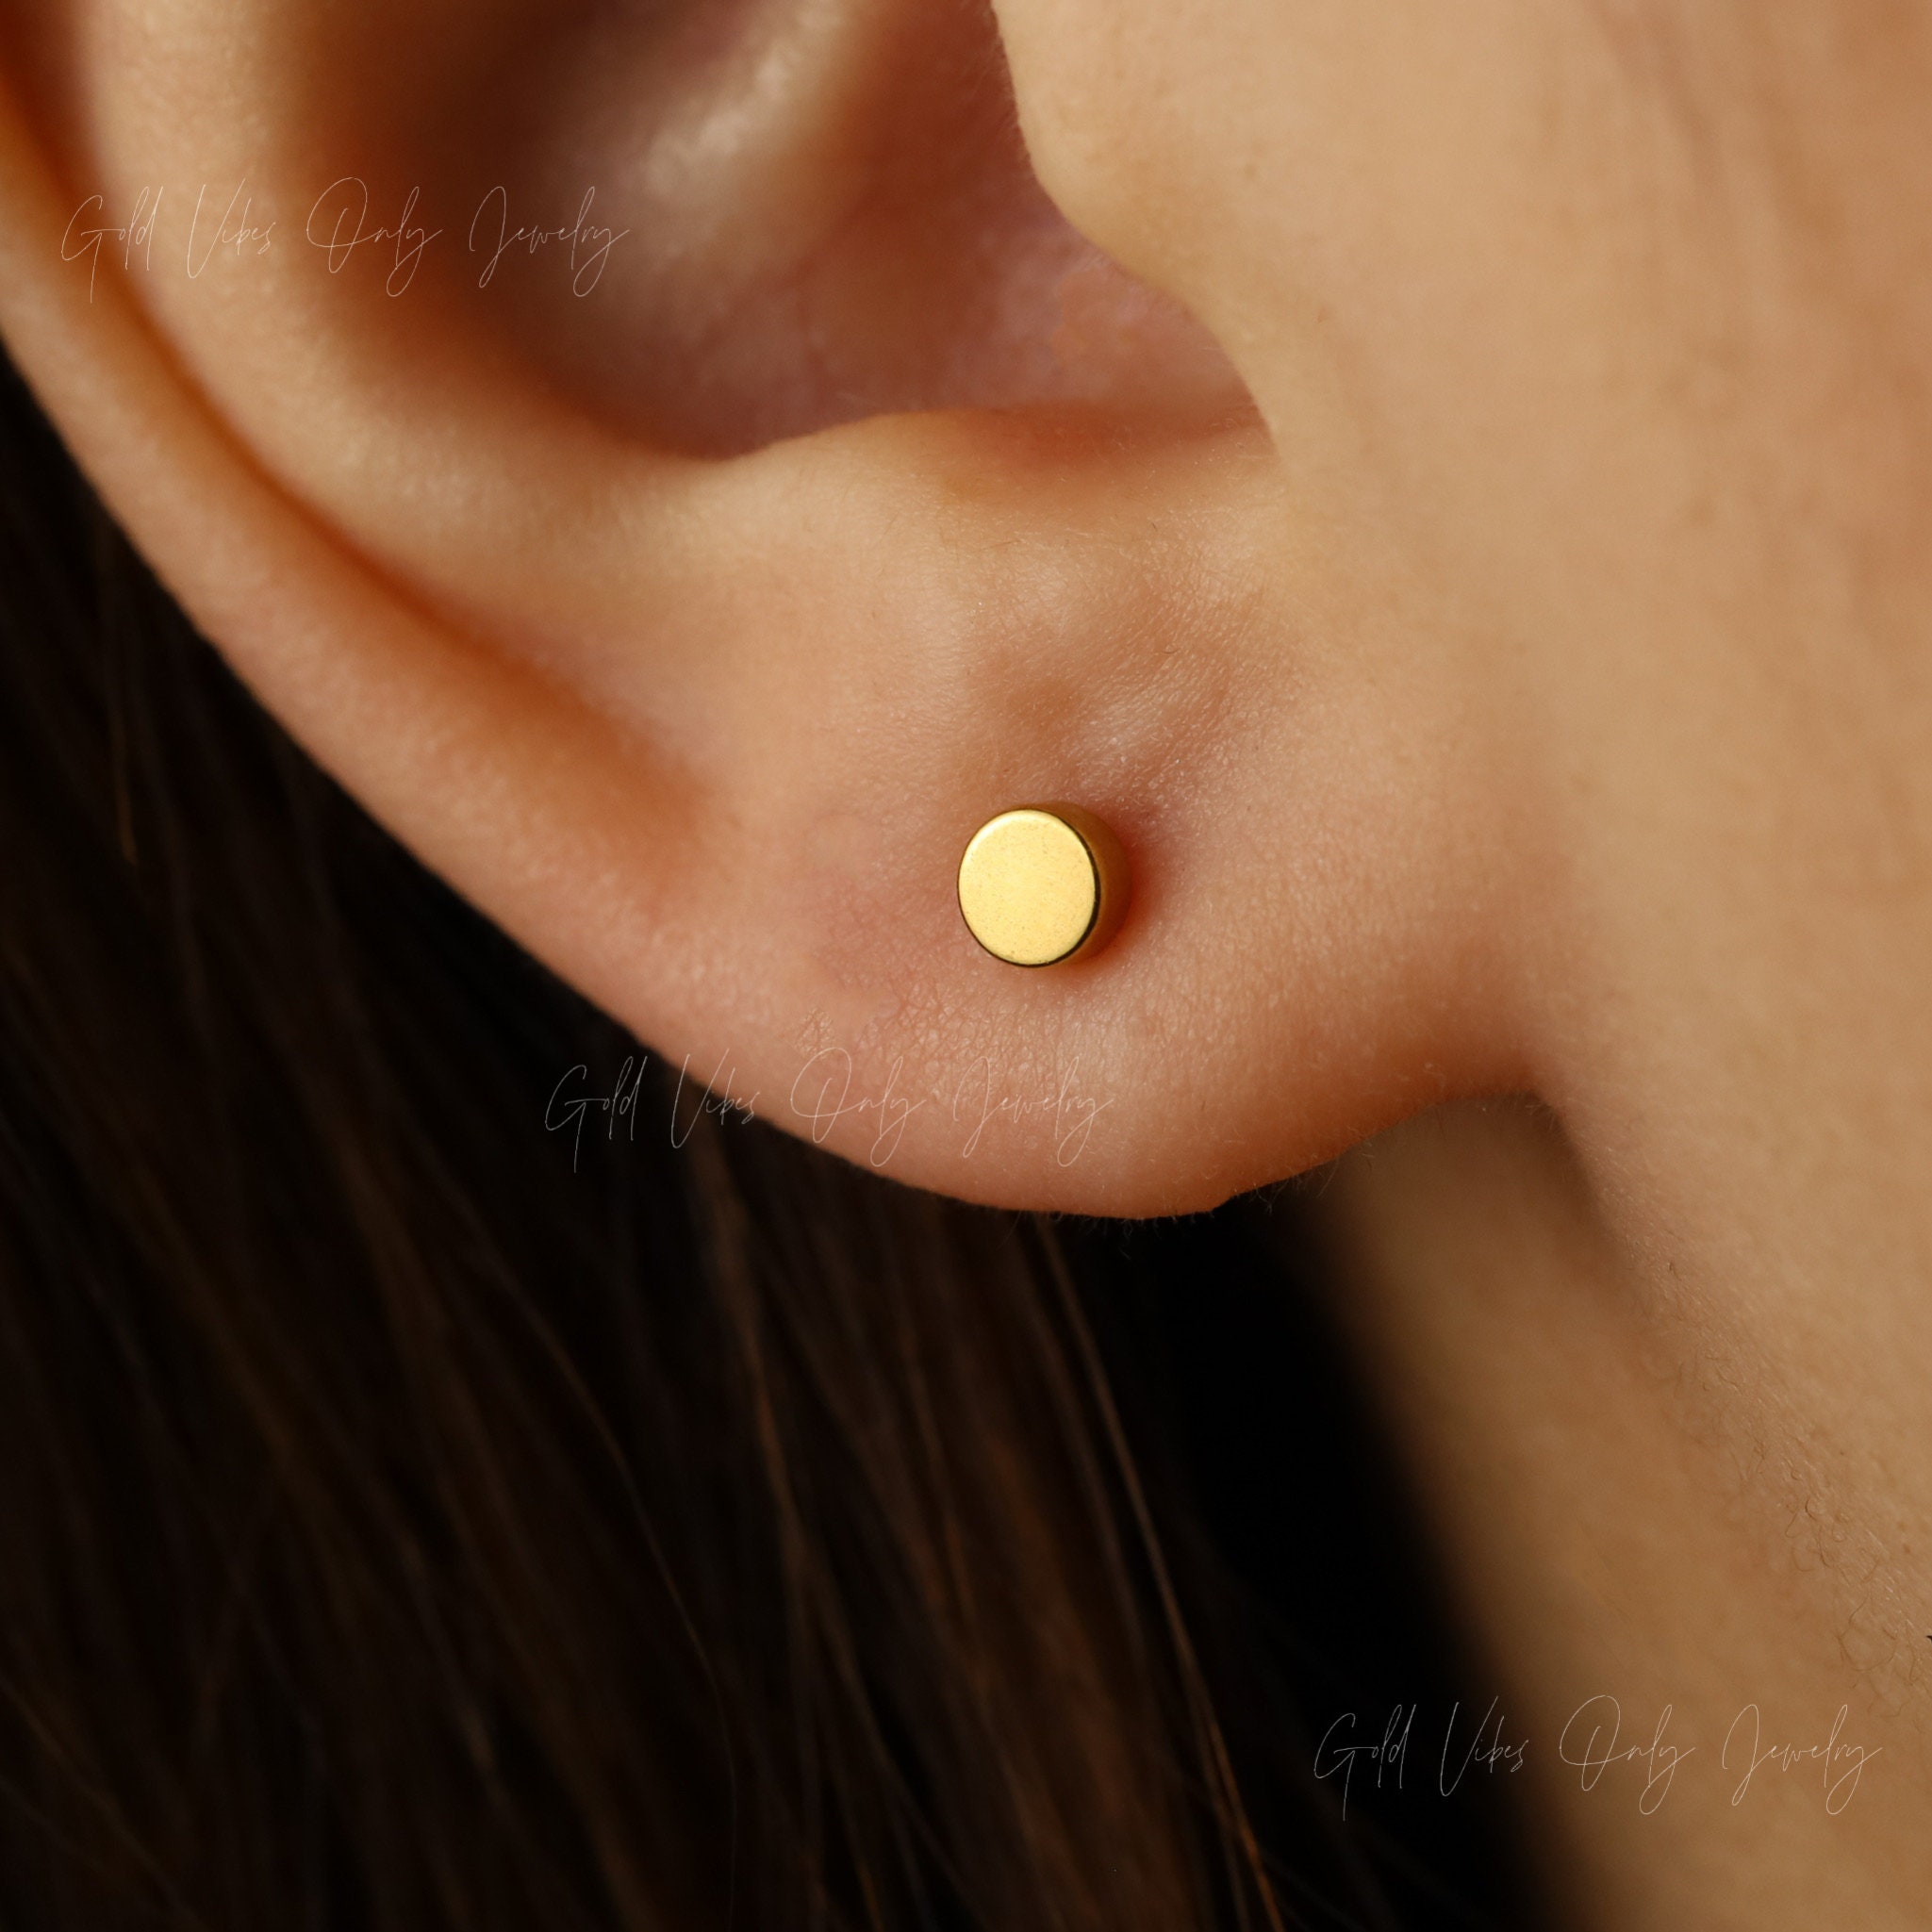 Earring Backs,4PCS Dics Earring Backs for Studs, Droopy Ears, Heavy  Earrings, Secure Pierced Earring Backs Replacements in White Gold, Large  Heavy Earring Support Backs,8mm*8mm*3mm 